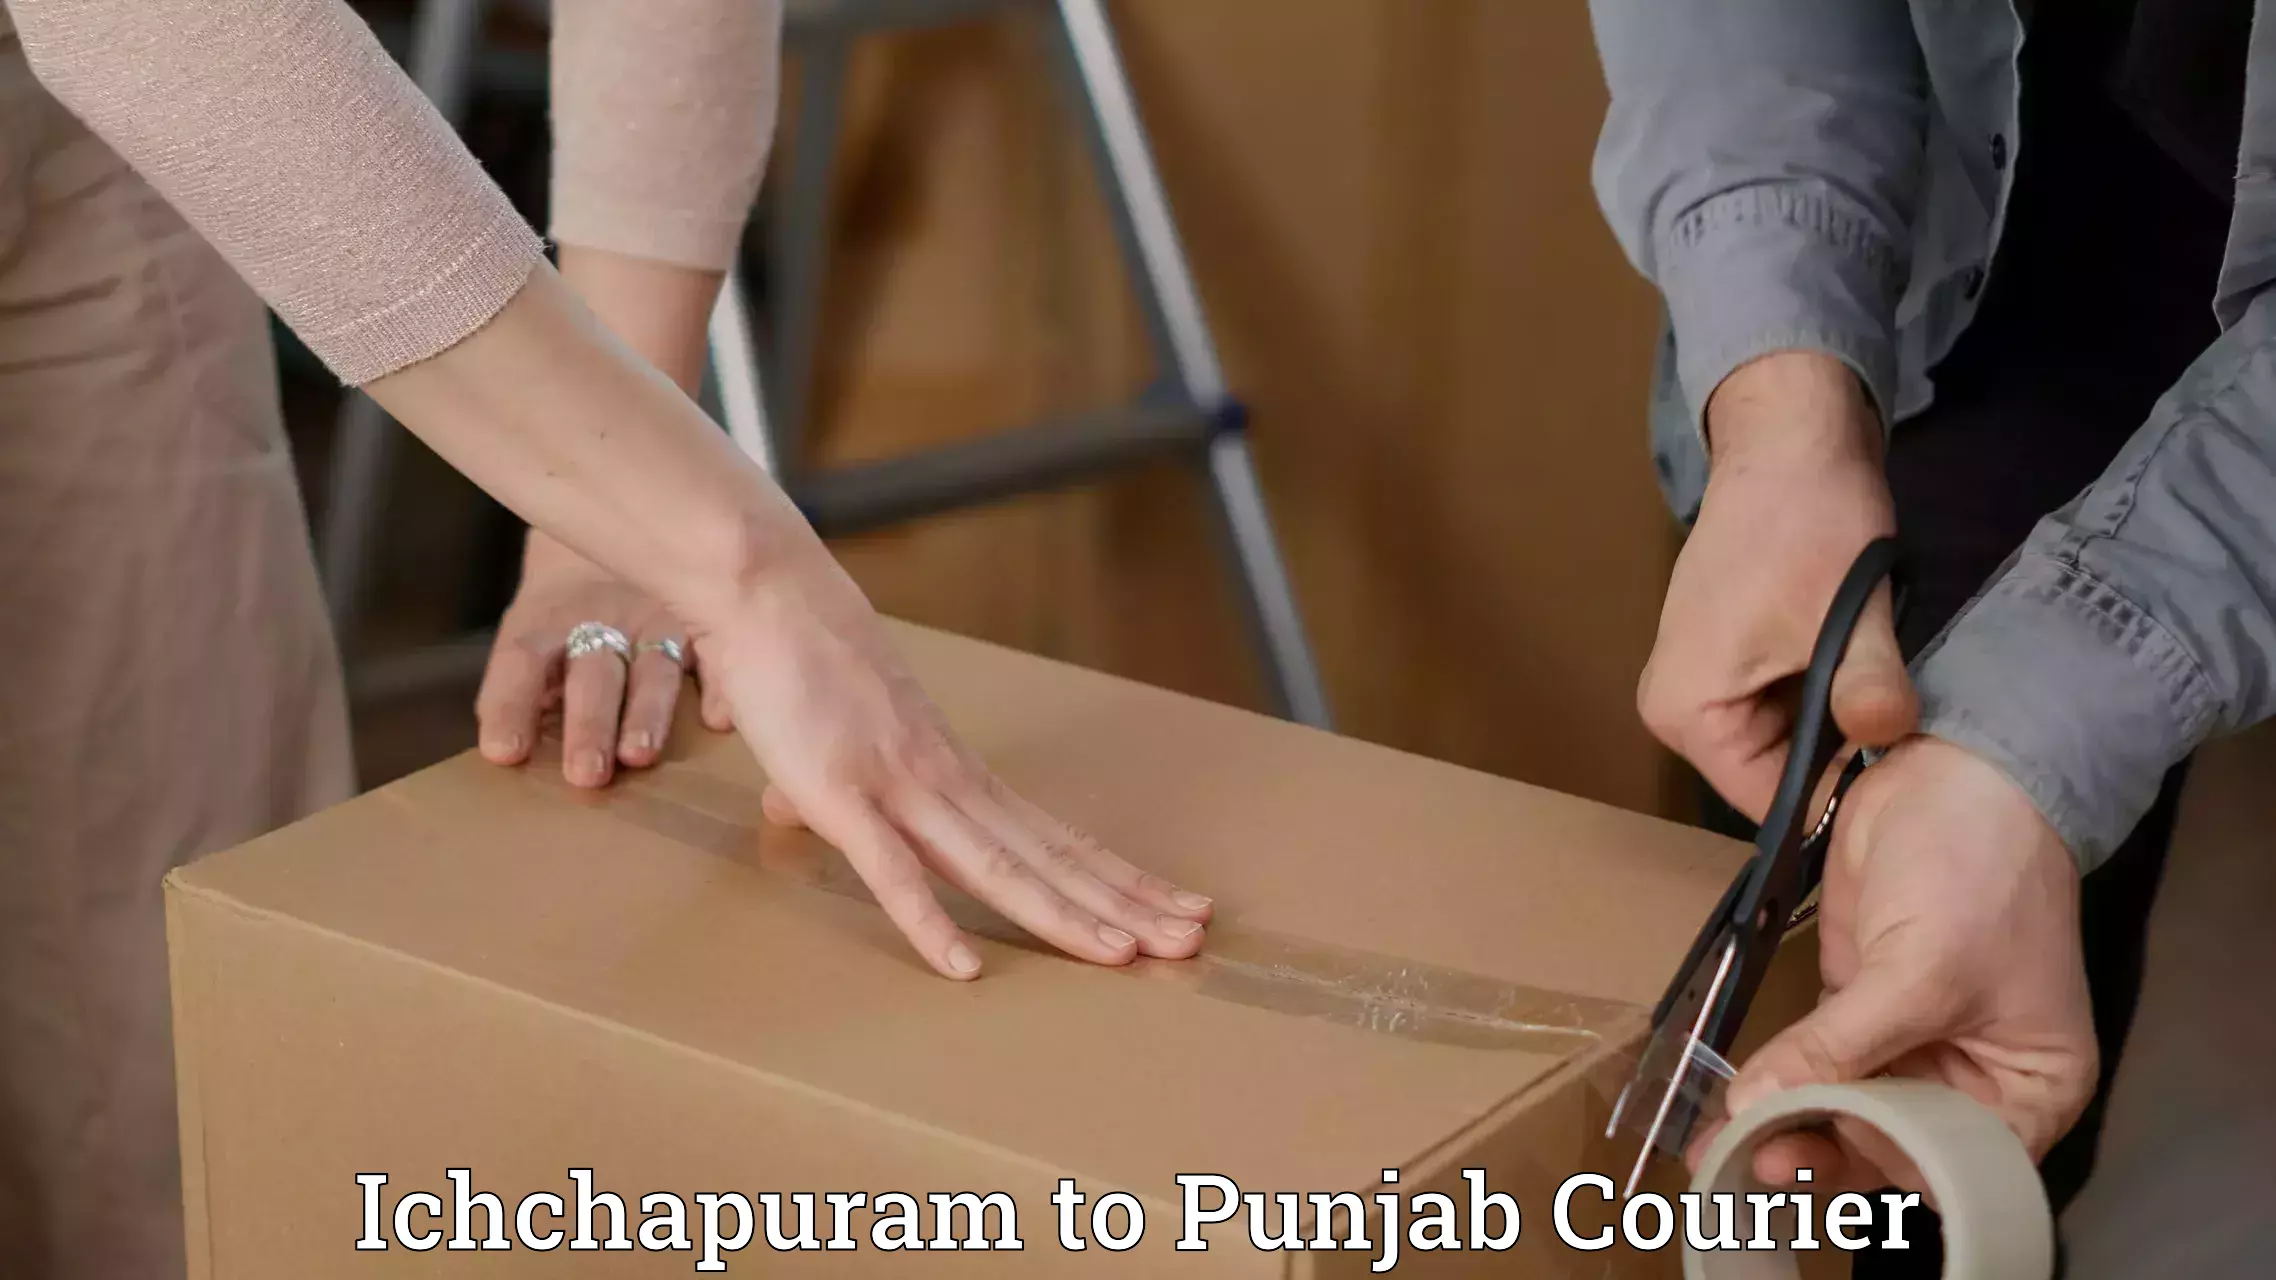 Quick courier services Ichchapuram to Punjab